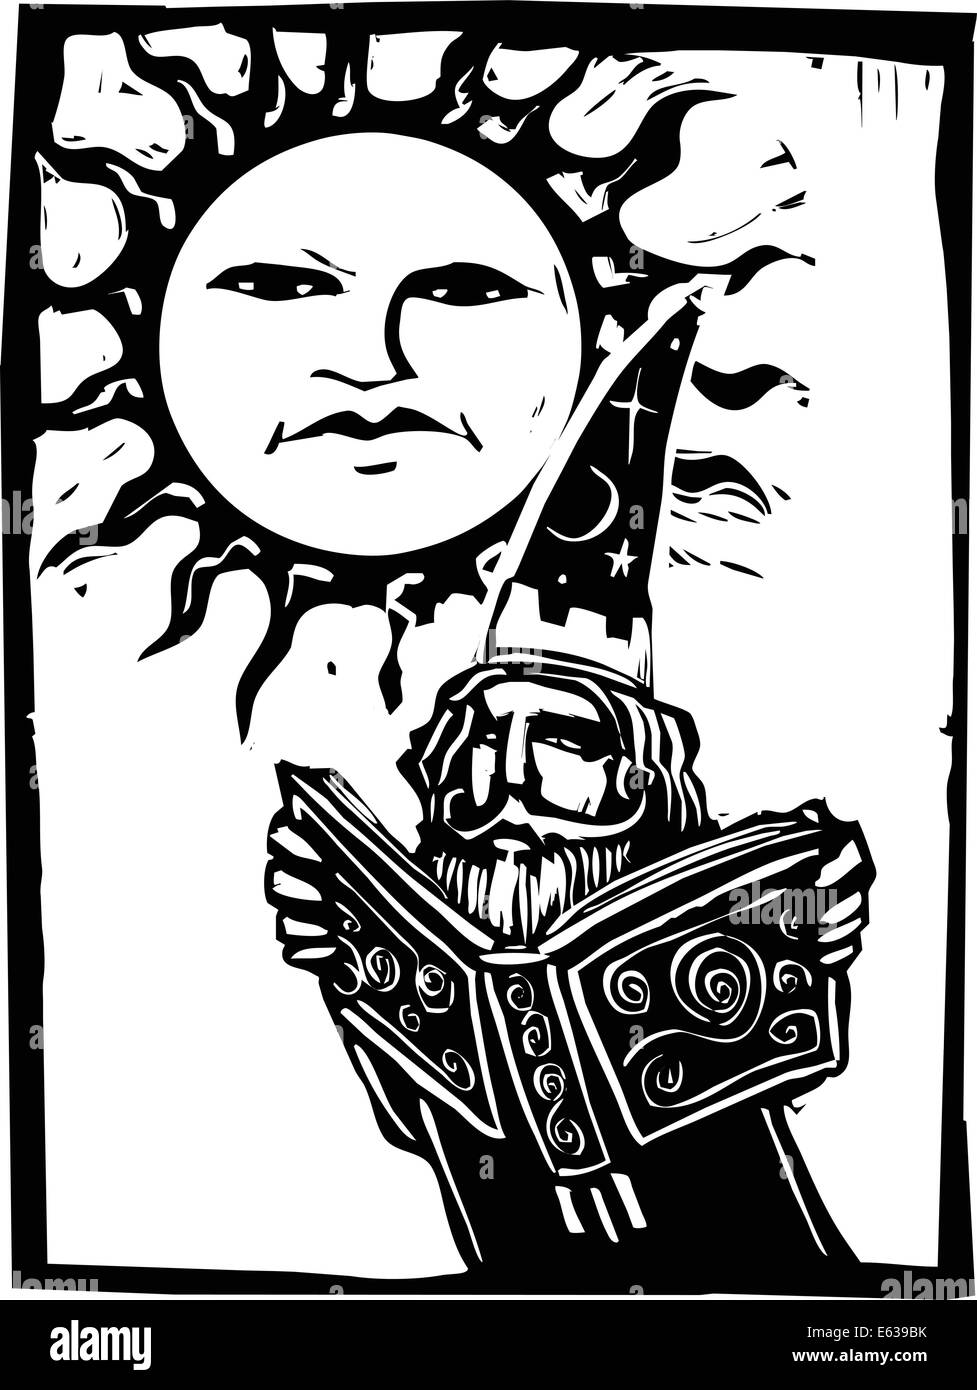 Wizard reading a book beneath a sun with a face. Stock Vector